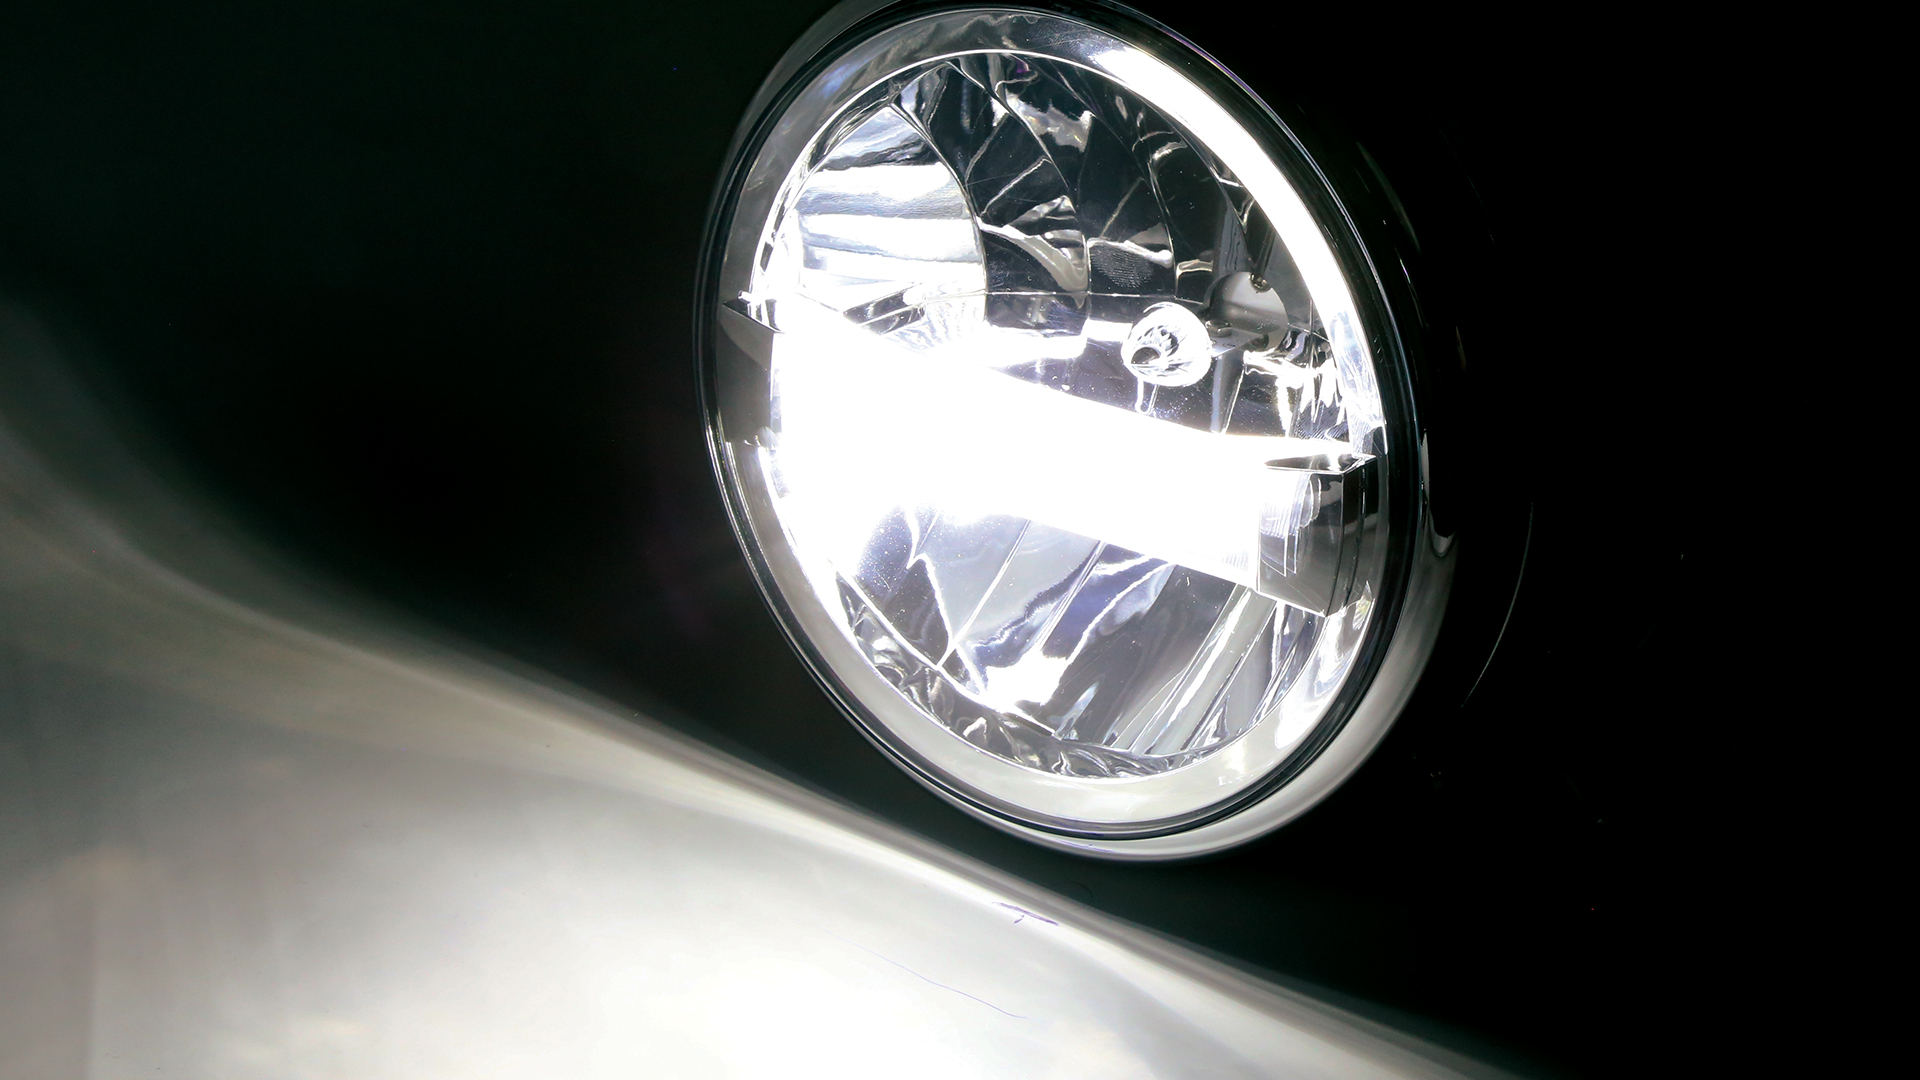 Faro principal LED de 7 pulgadas TIPO 4 con función de luz de estacionamiento y de marcha diurna, redondo con reflector cromado, homologado E-. Disponible con montaje lateral o inferior.